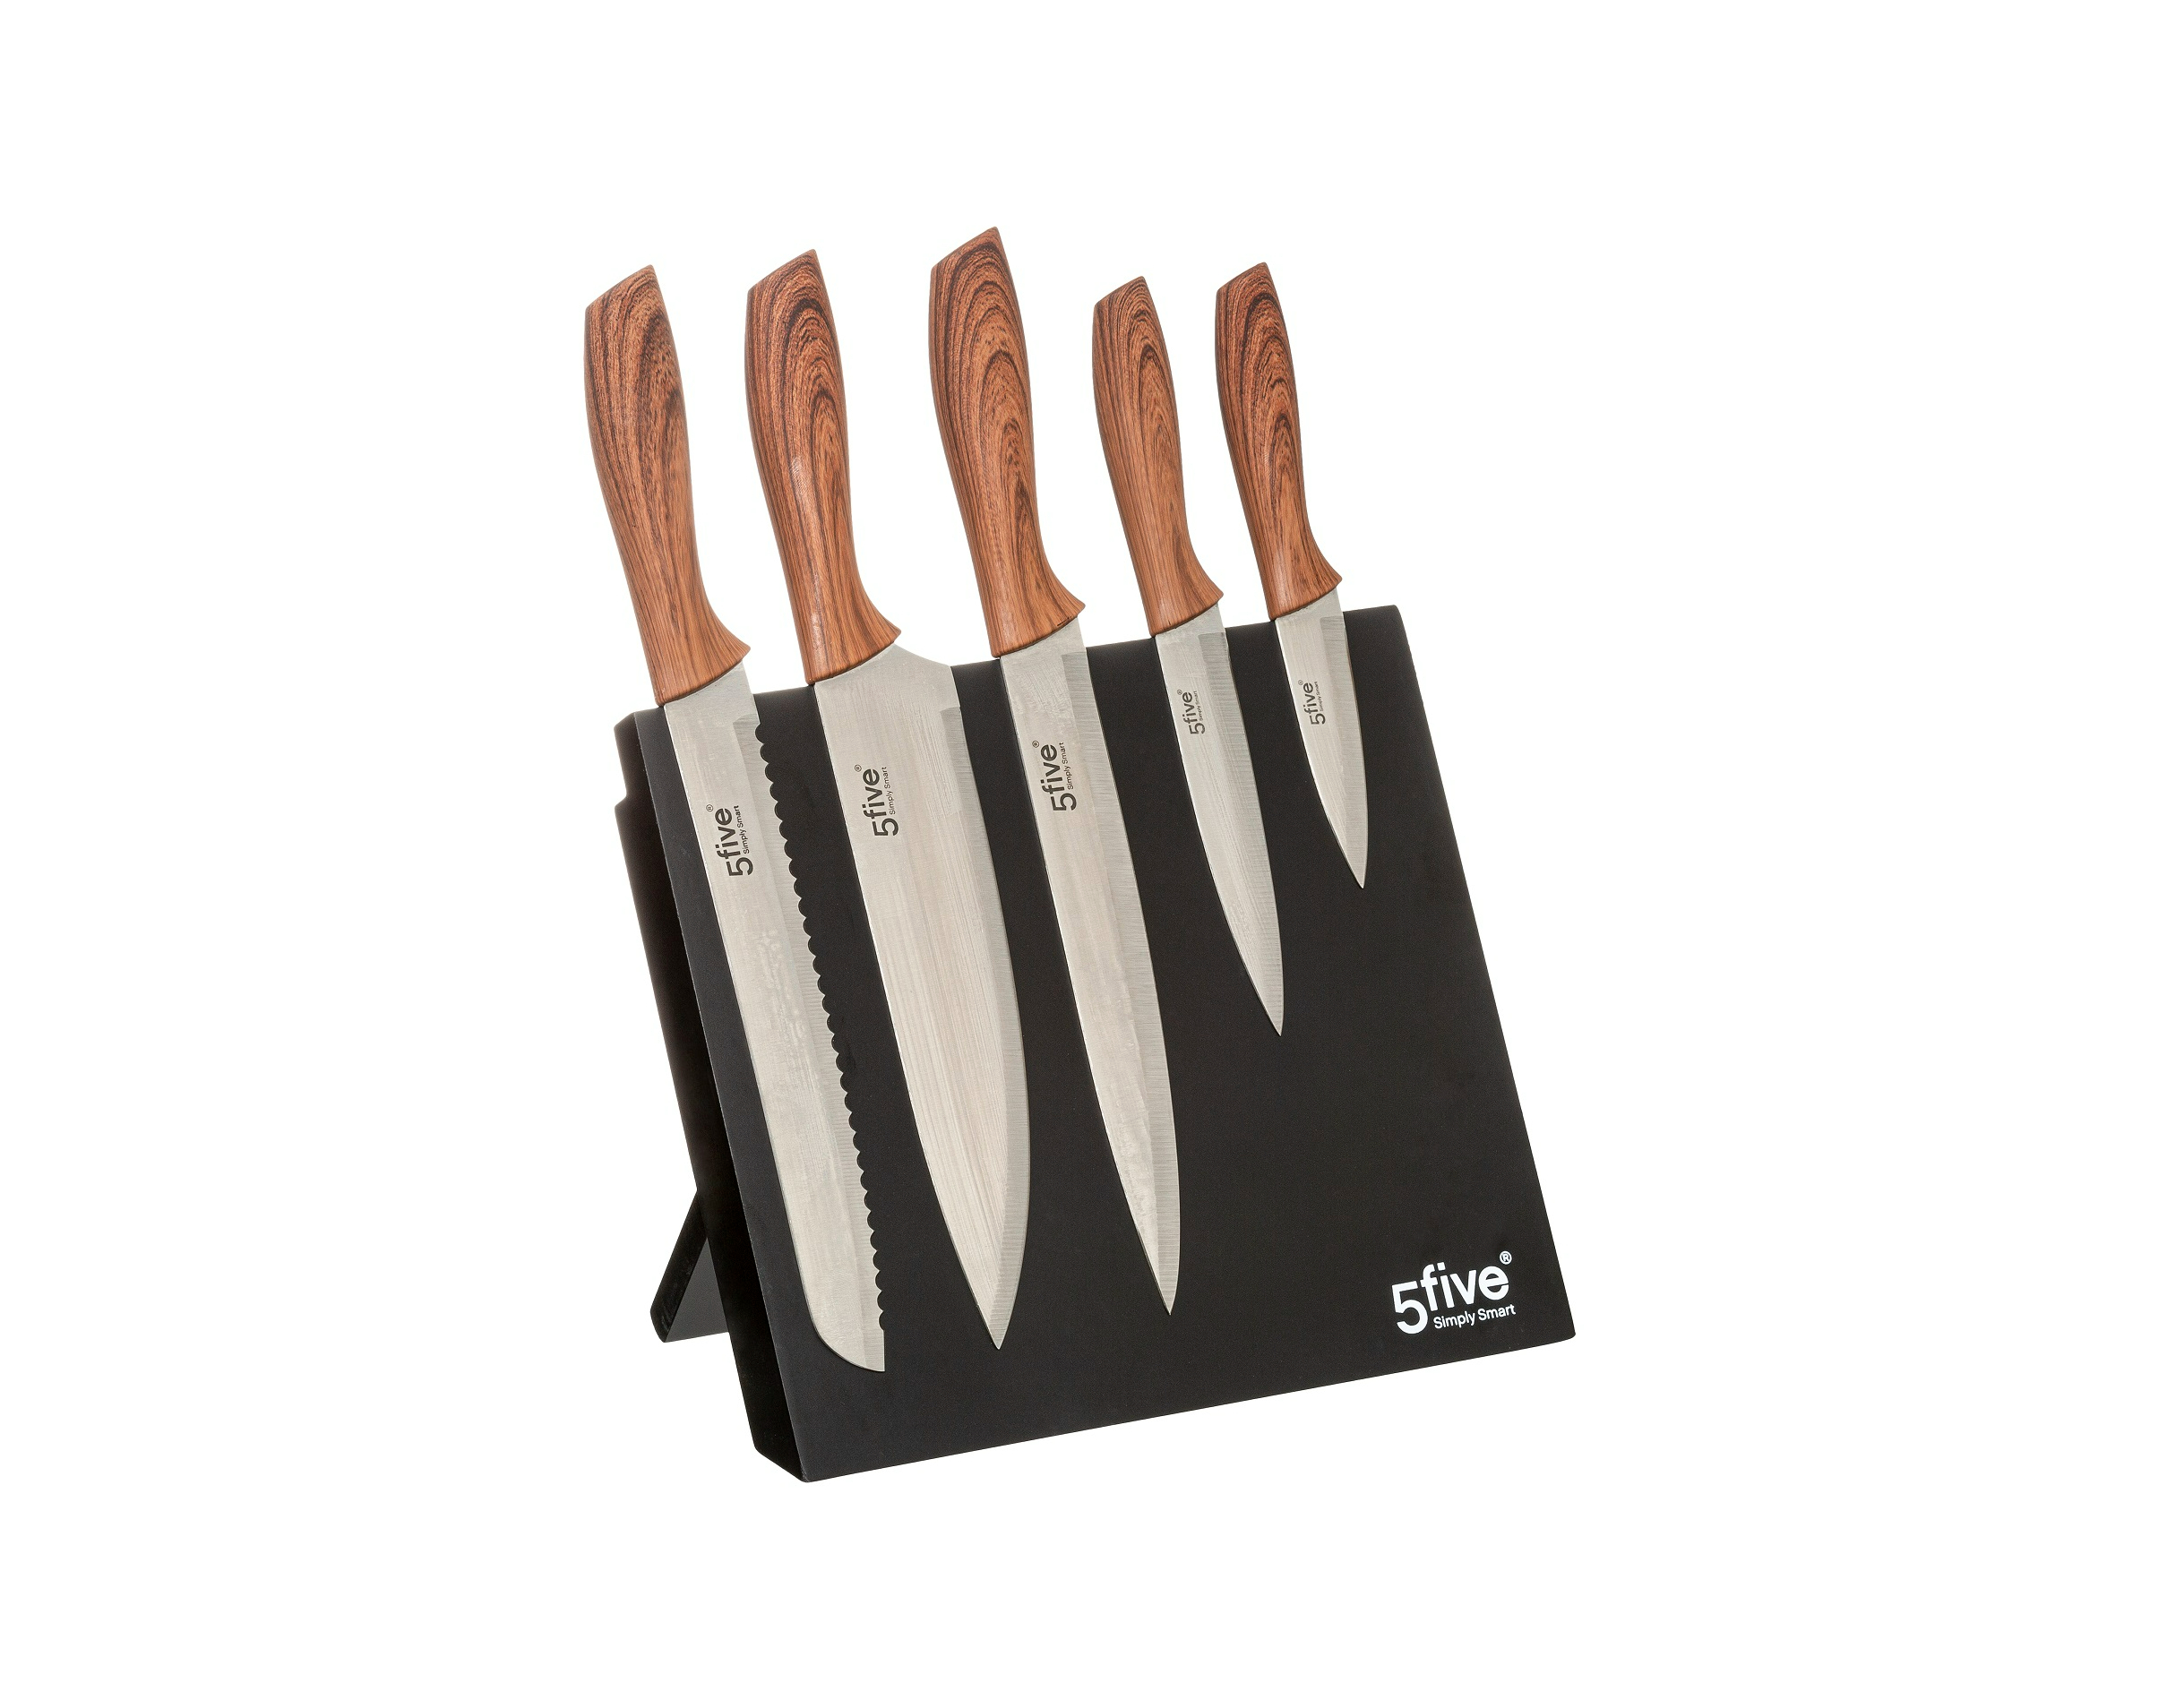 מעמד סכינים מגנטי המשלב 5 סכינים - 151241